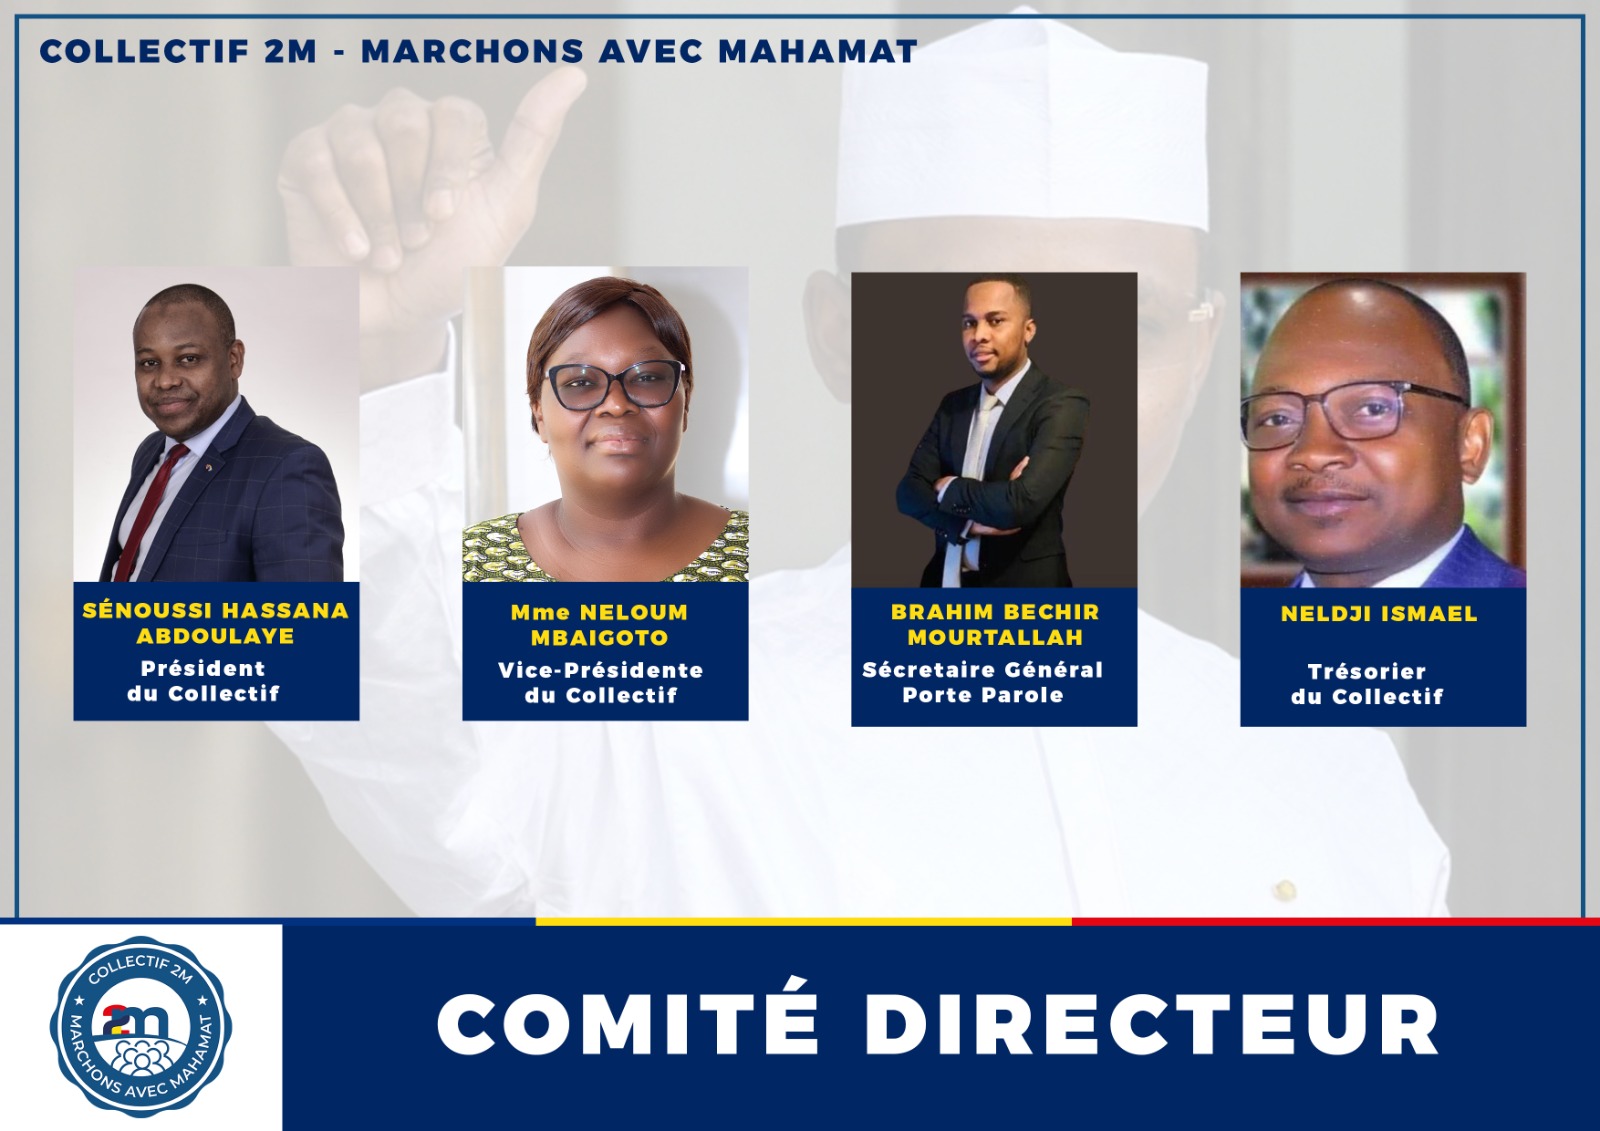 Une tribune des « géants » pour la candidature de Mahamat Idriss Déby Itno est signée